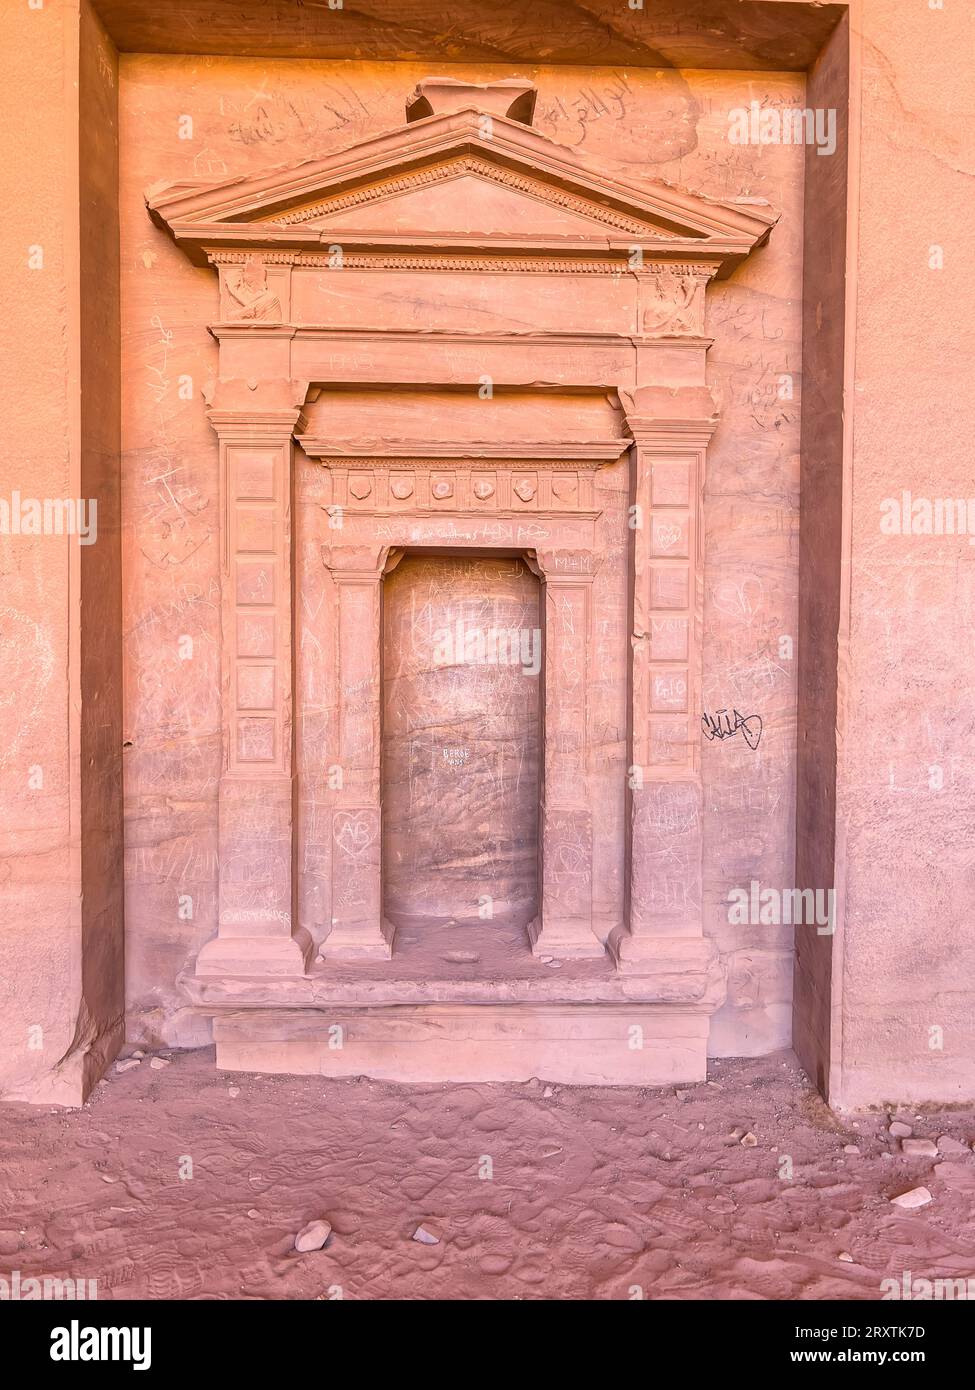 Porte sculptée, parc archéologique de Petra, site du patrimoine mondial de l'UNESCO, l'une des sept nouvelles merveilles du monde, Petra, Jordanie, Moyen-Orient Banque D'Images